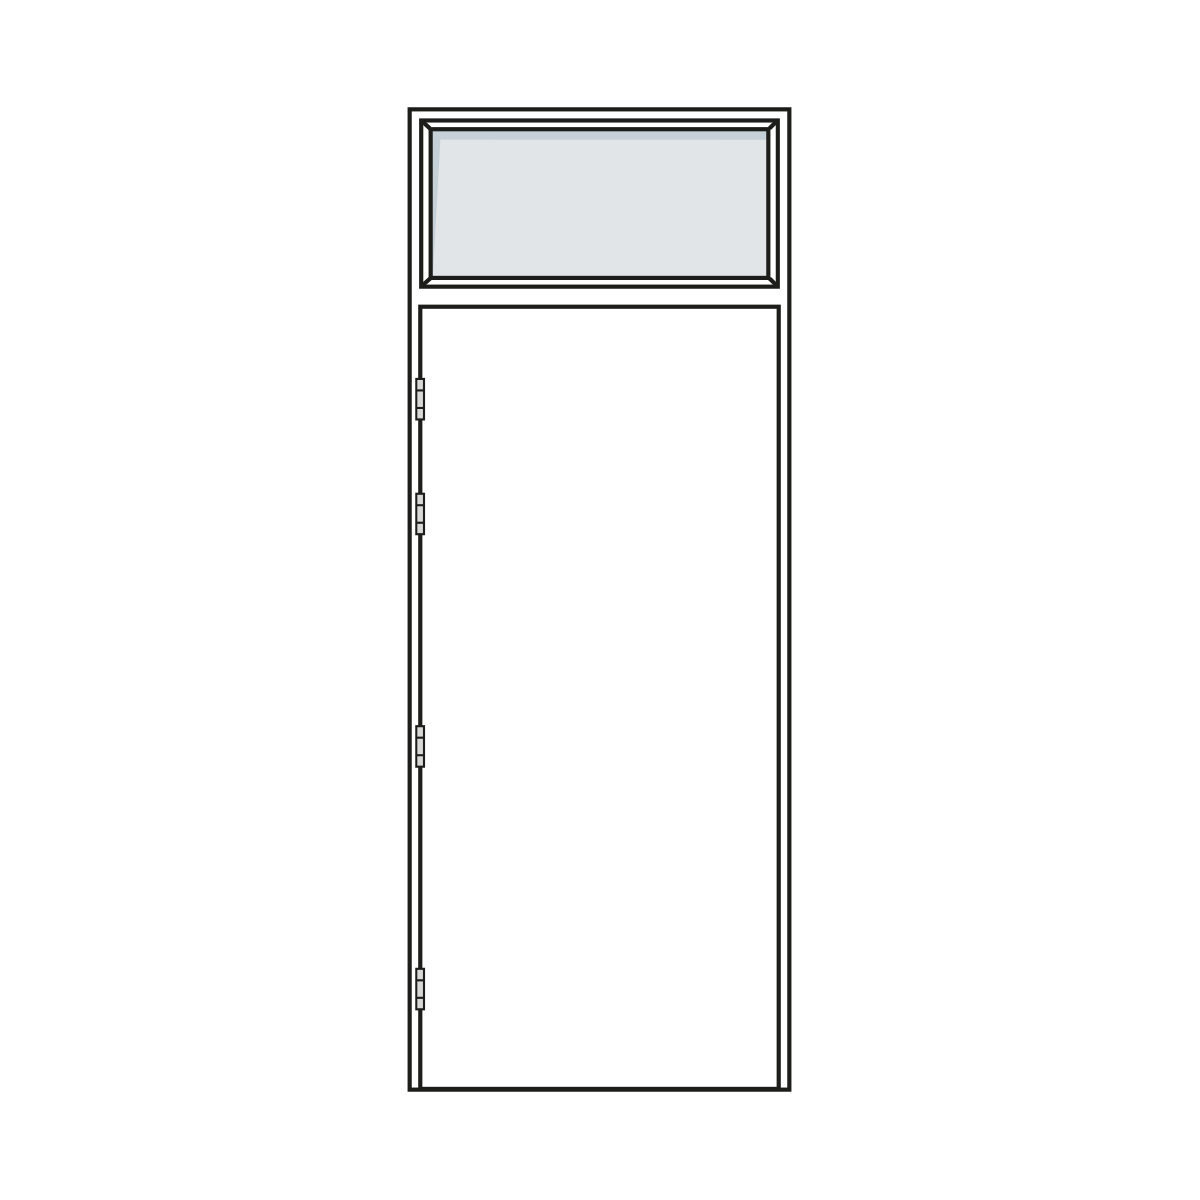 Door Configuration - Single Pair Doorset with Fanlight - Code S-FL